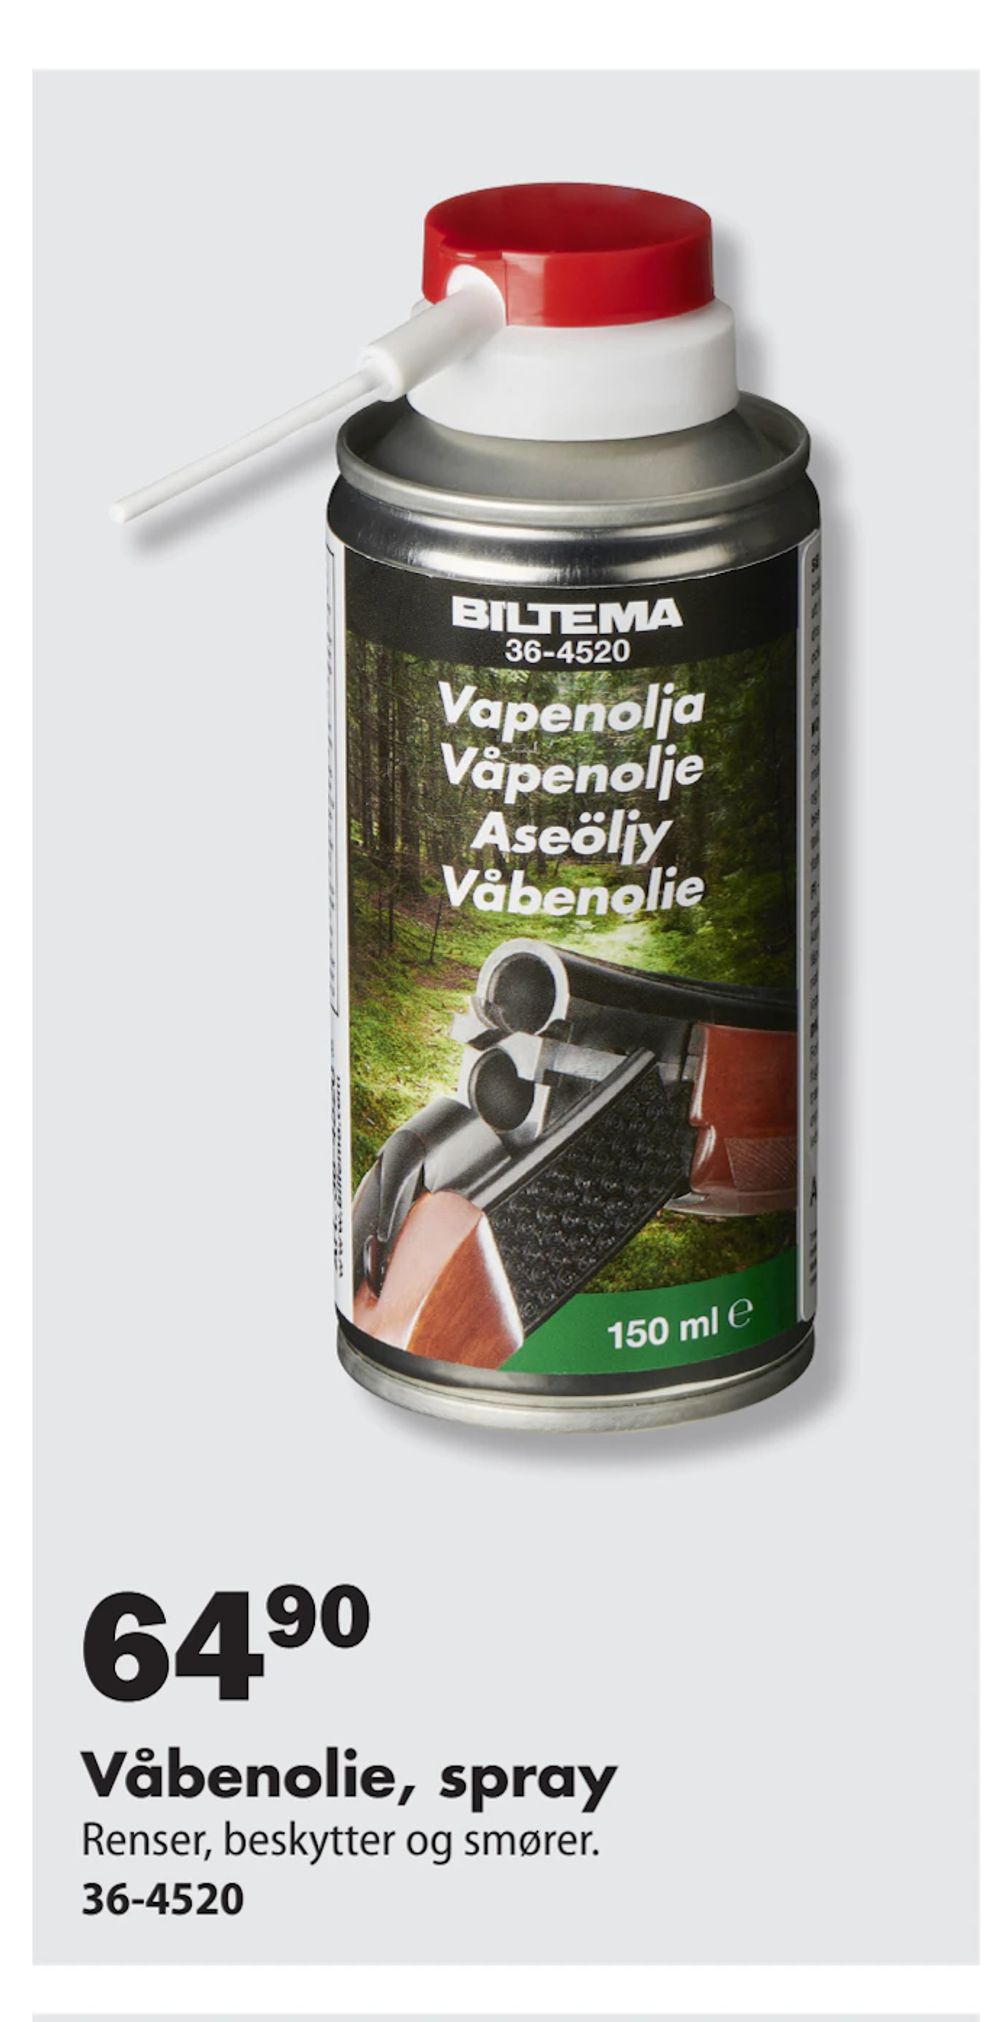 Tilbud på Våbenolie, spray fra Biltema til 64,90 kr.